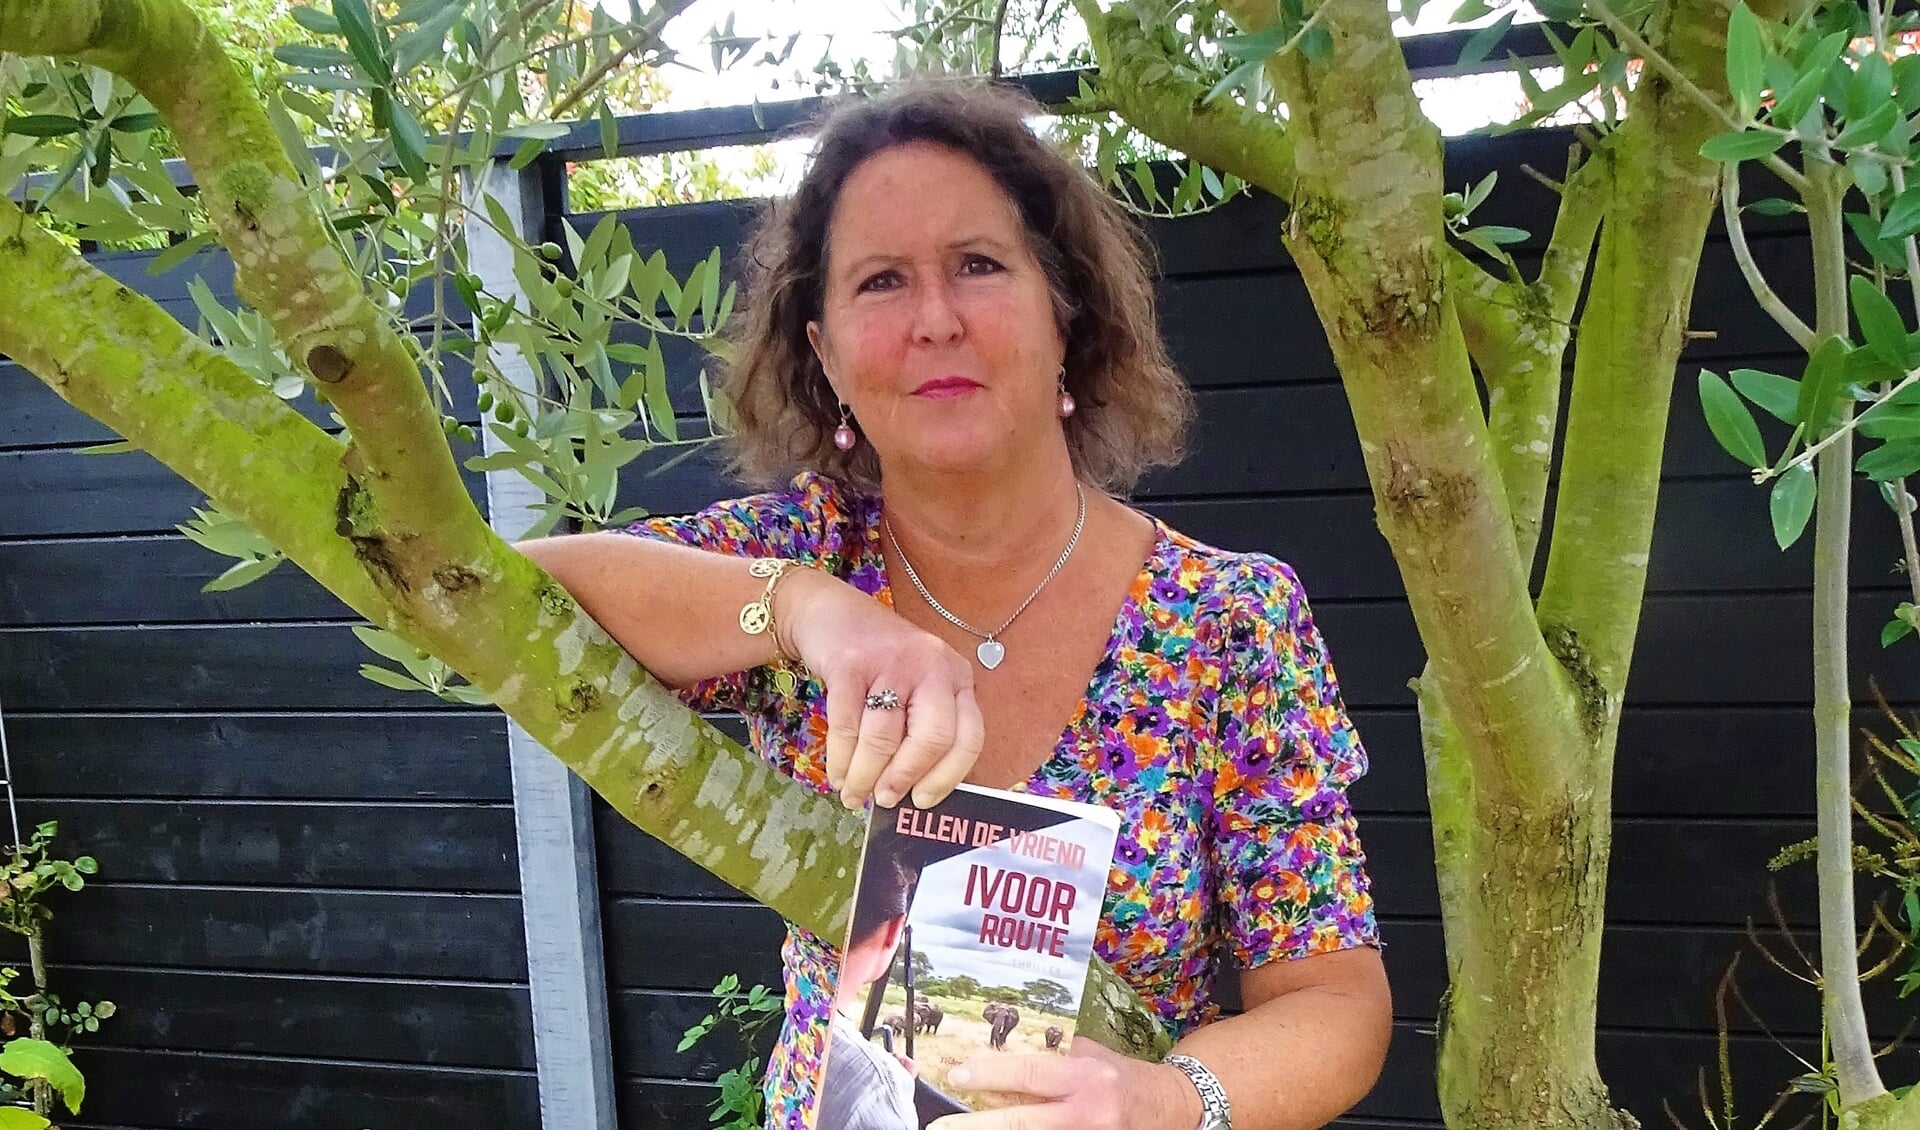 Auteur Ellen De Vriend met haar nieuwste boek 'Ivoorroute'. 